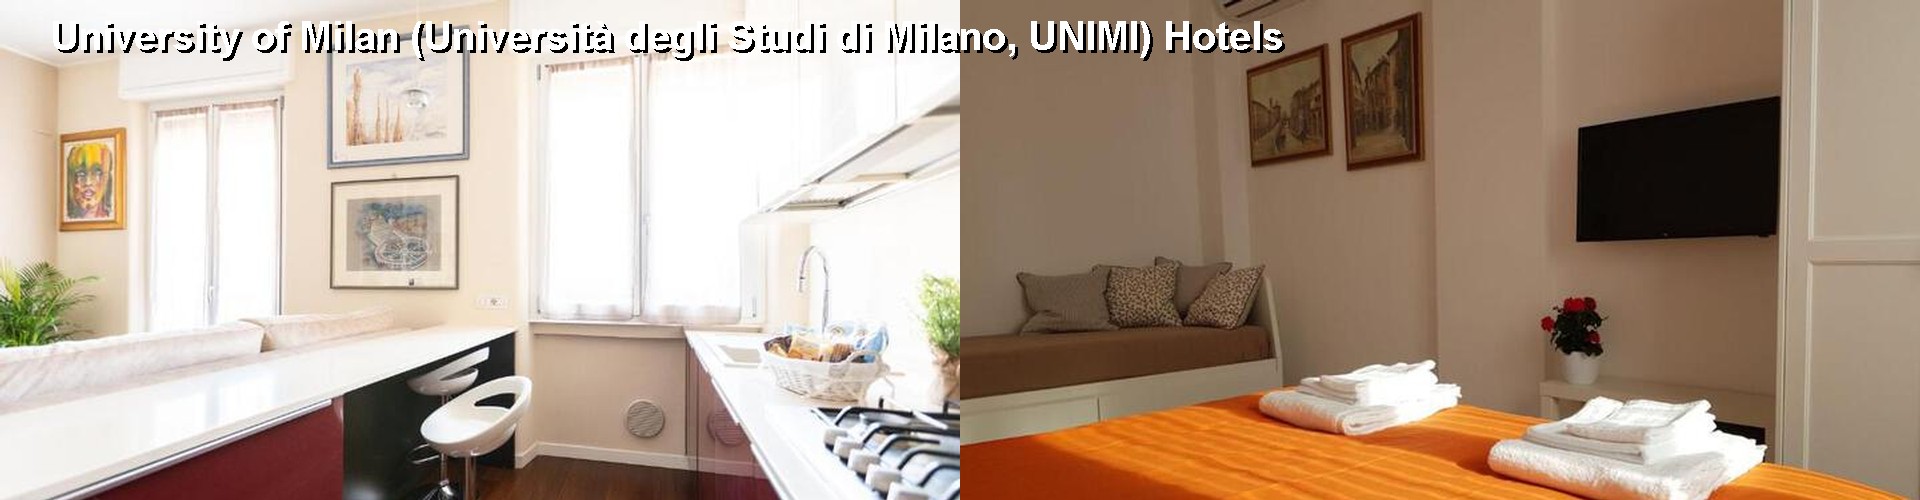 5 Best Hotels near University of Milan (Università degli Studi di Milano, UNIMI)